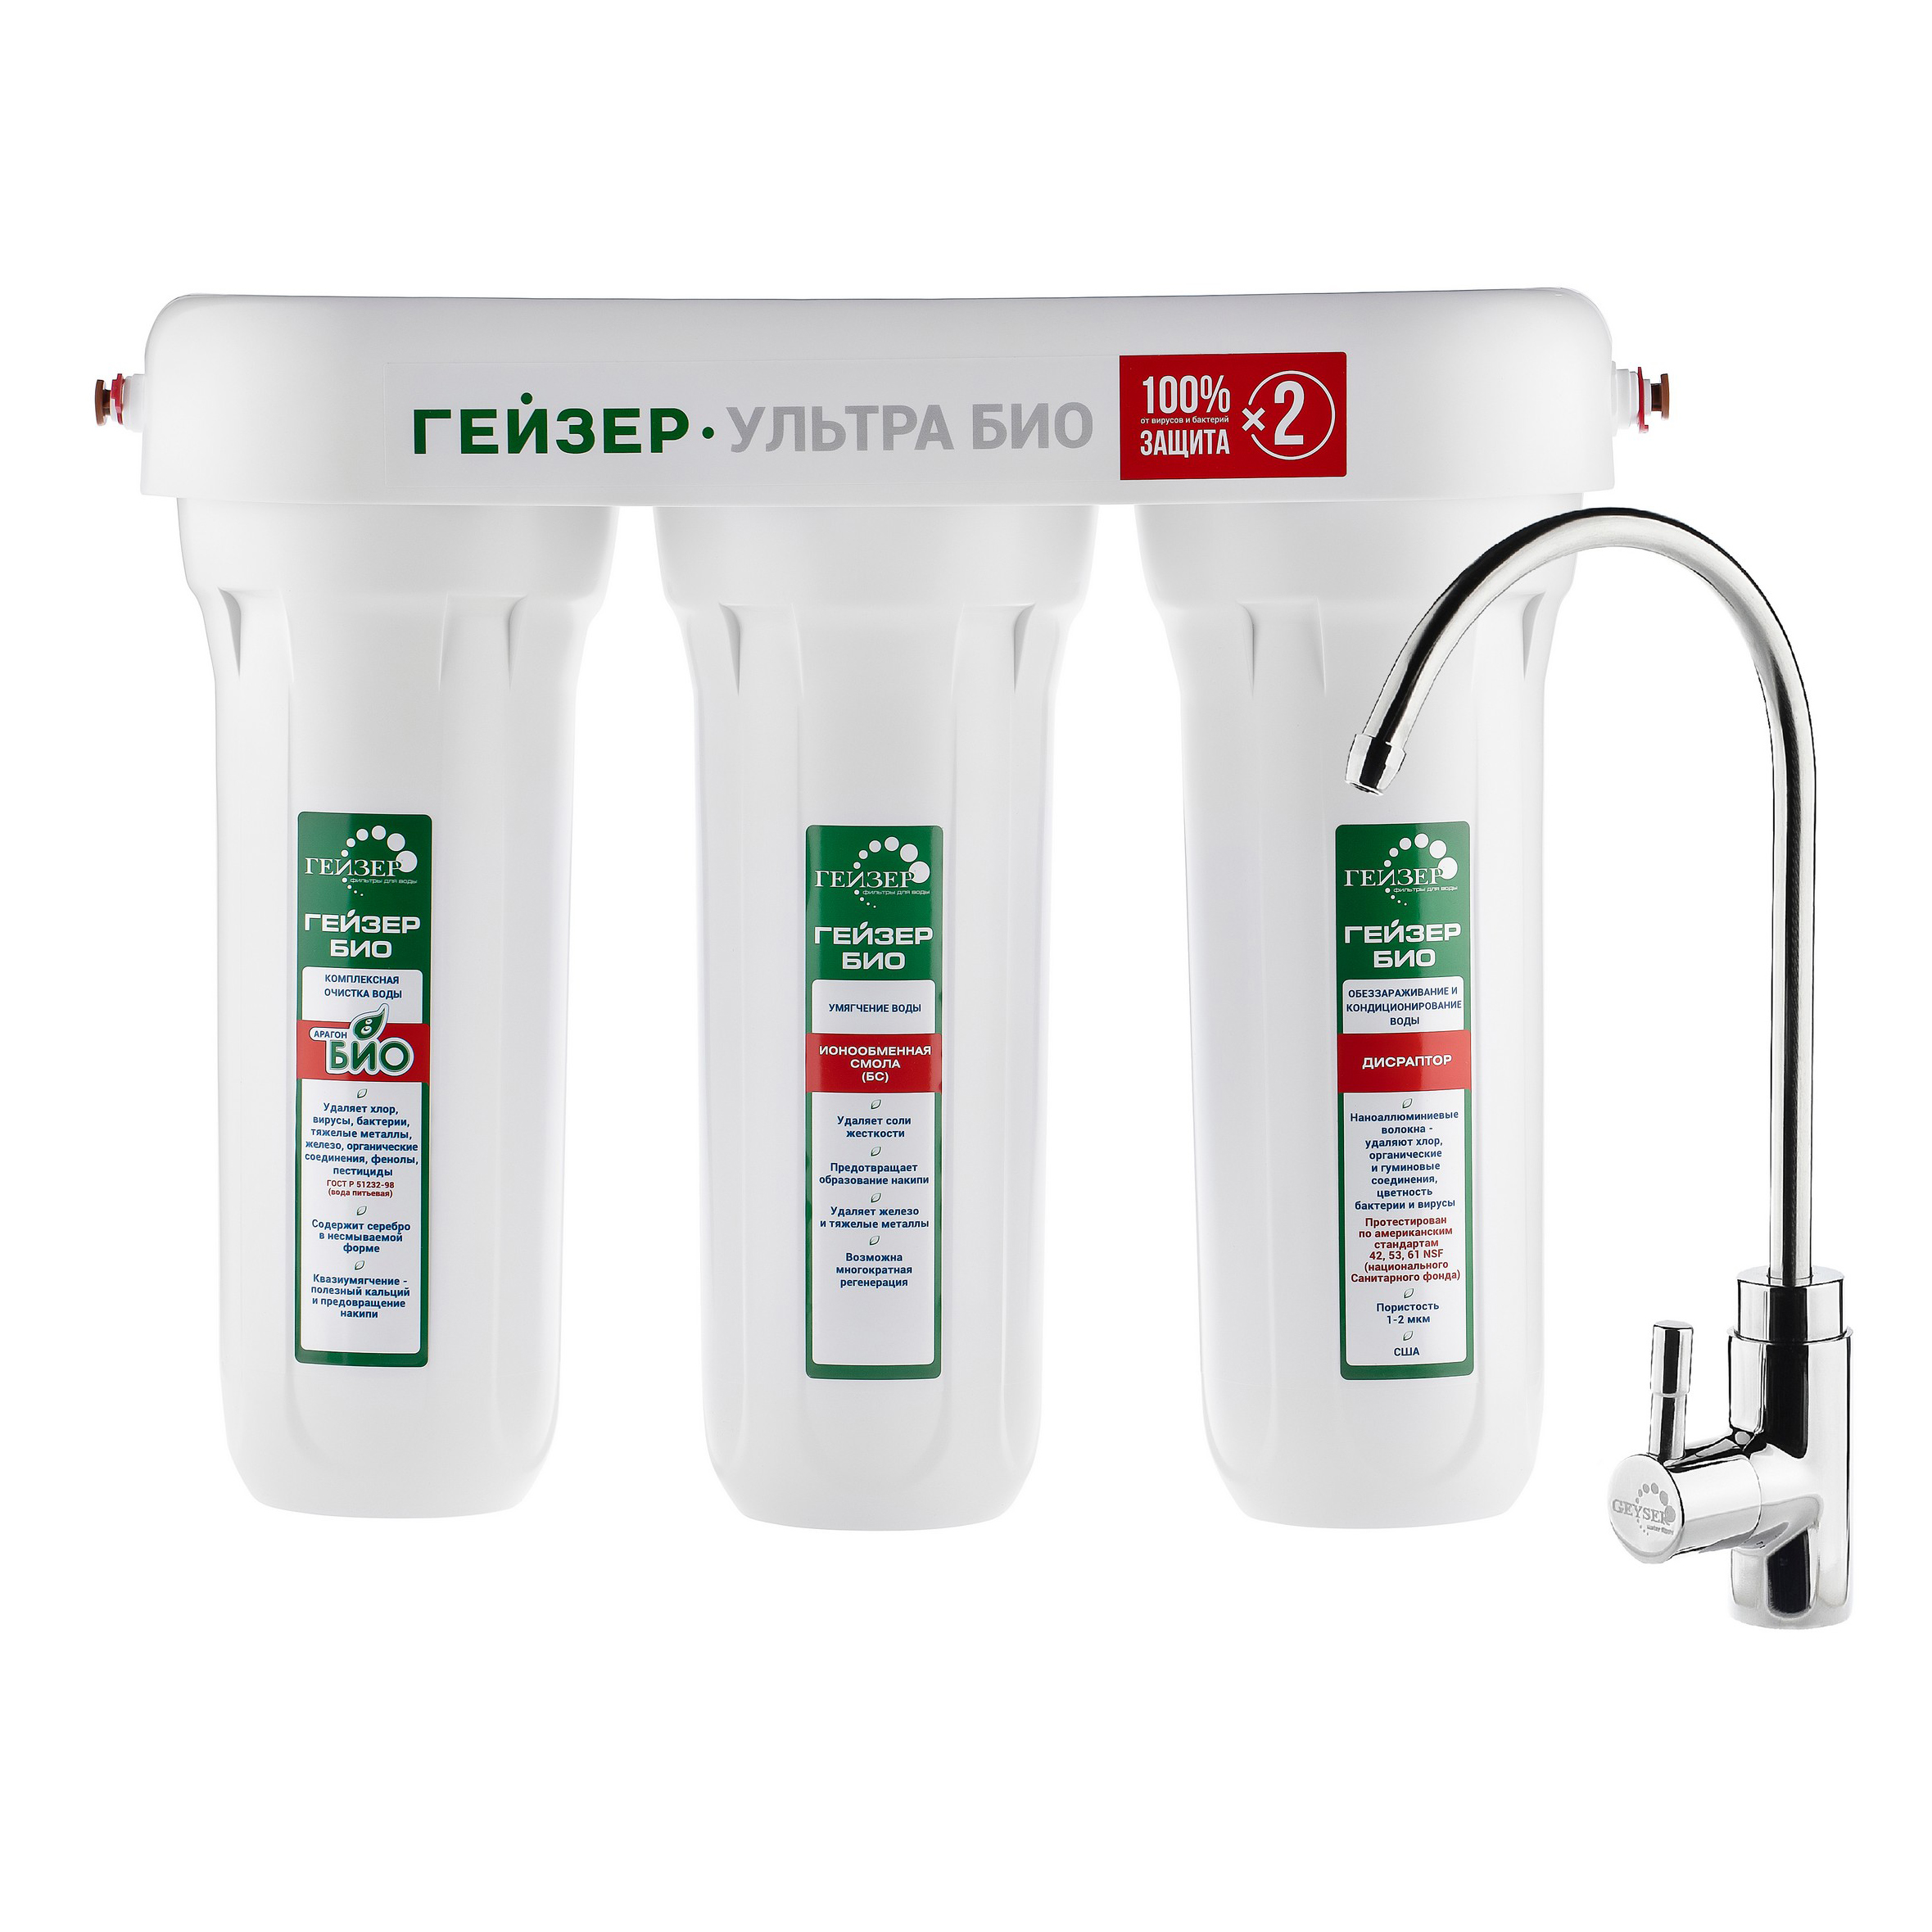 Купить Гейзер Ультра Био 431 для очень жесткой воды - фильтр под мойку повыгодной цене в официальном интернет-магазине «Гейзер»